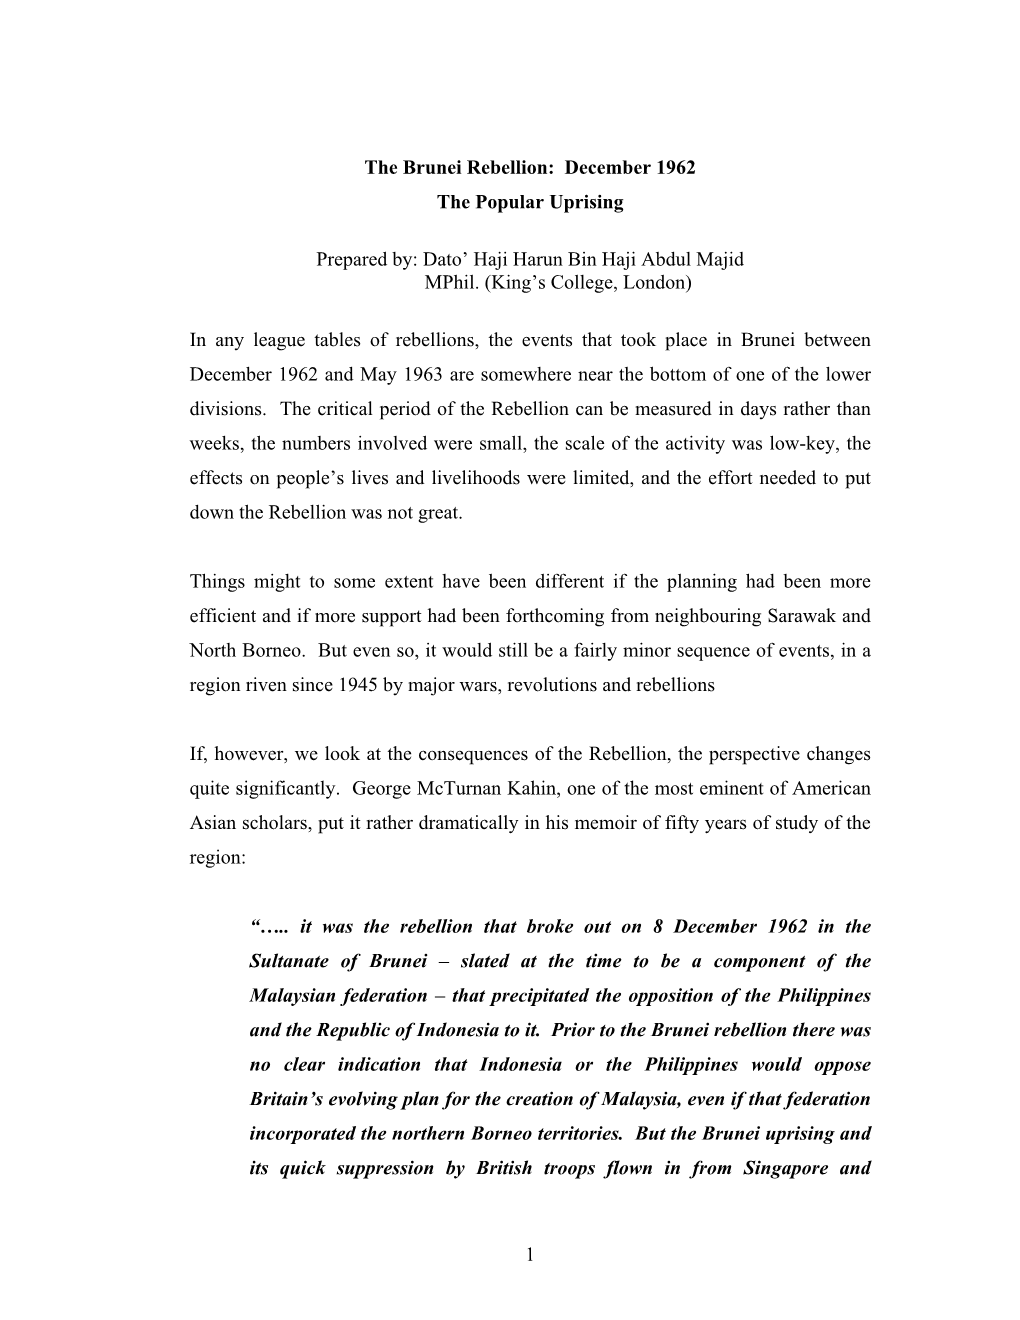 The Brunei Rebellion: December 1962 the Popular Uprising